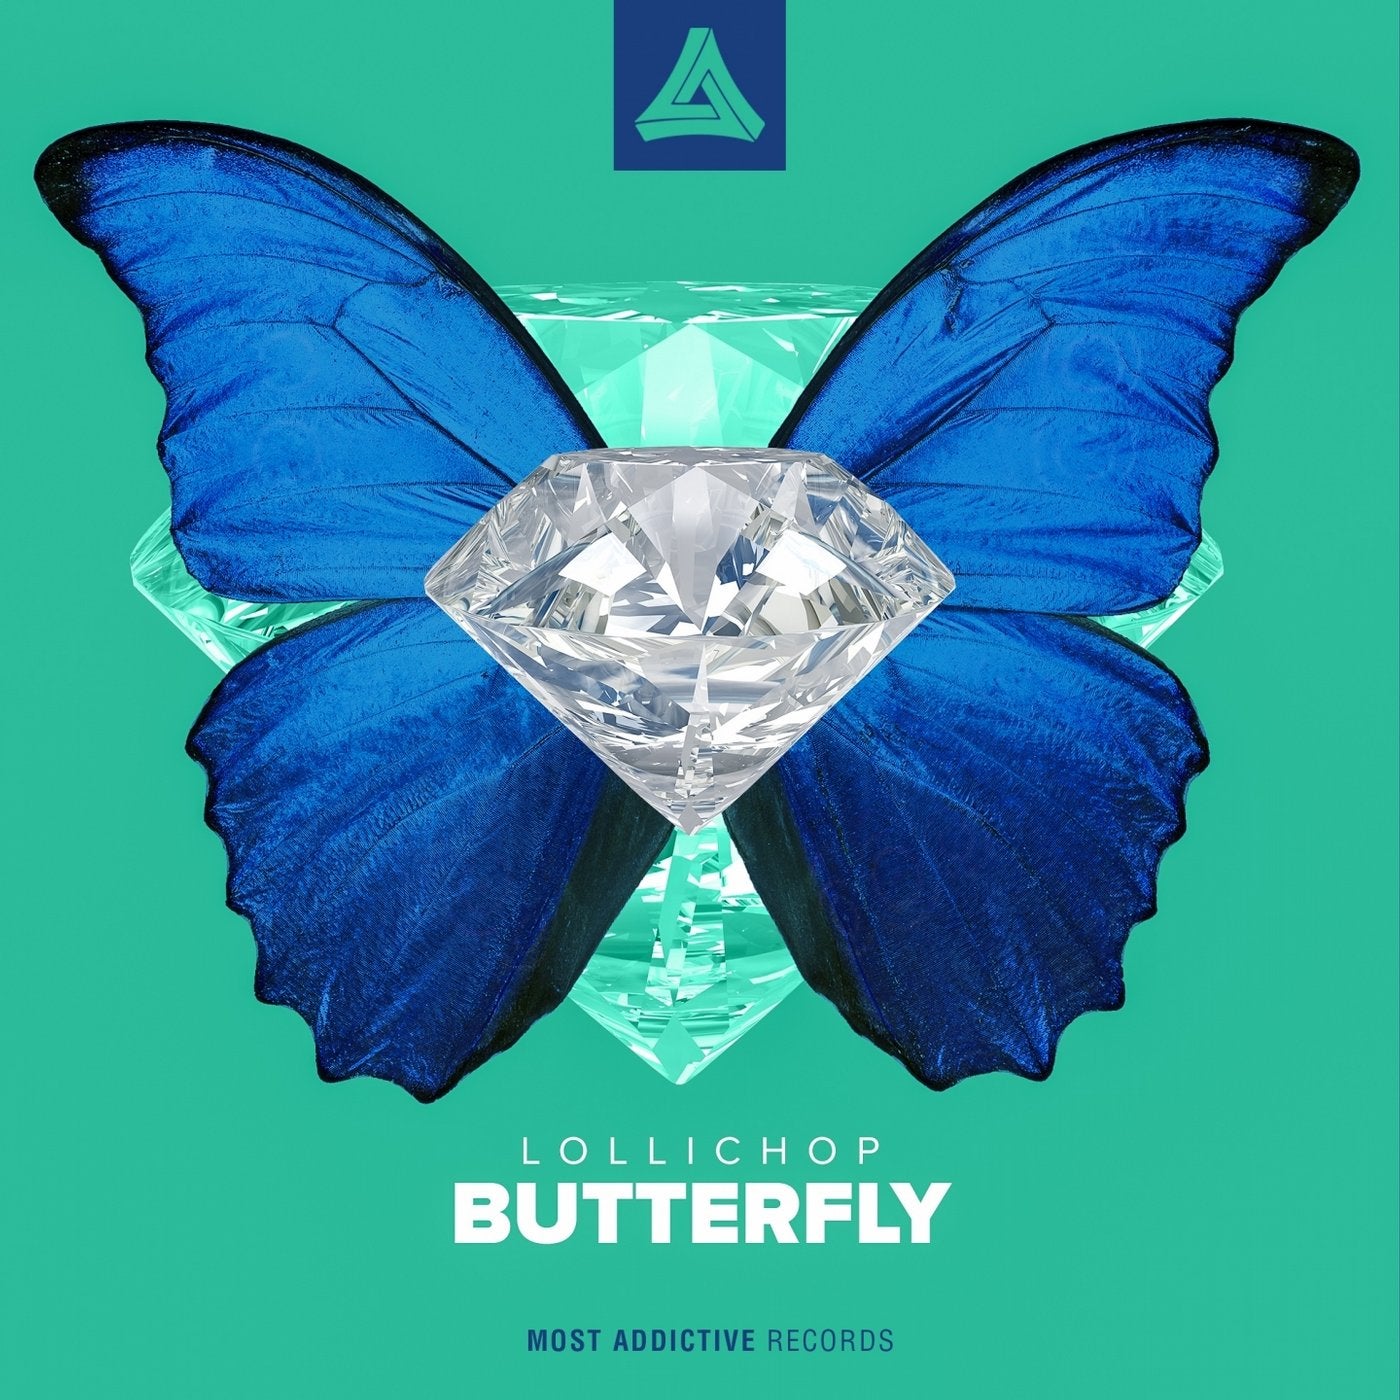 Бабочка обложка. Butterfly обложка. Обложка для трека бабочка. Little Butterfly обложка. Музыкальная обложка с бабочкой.